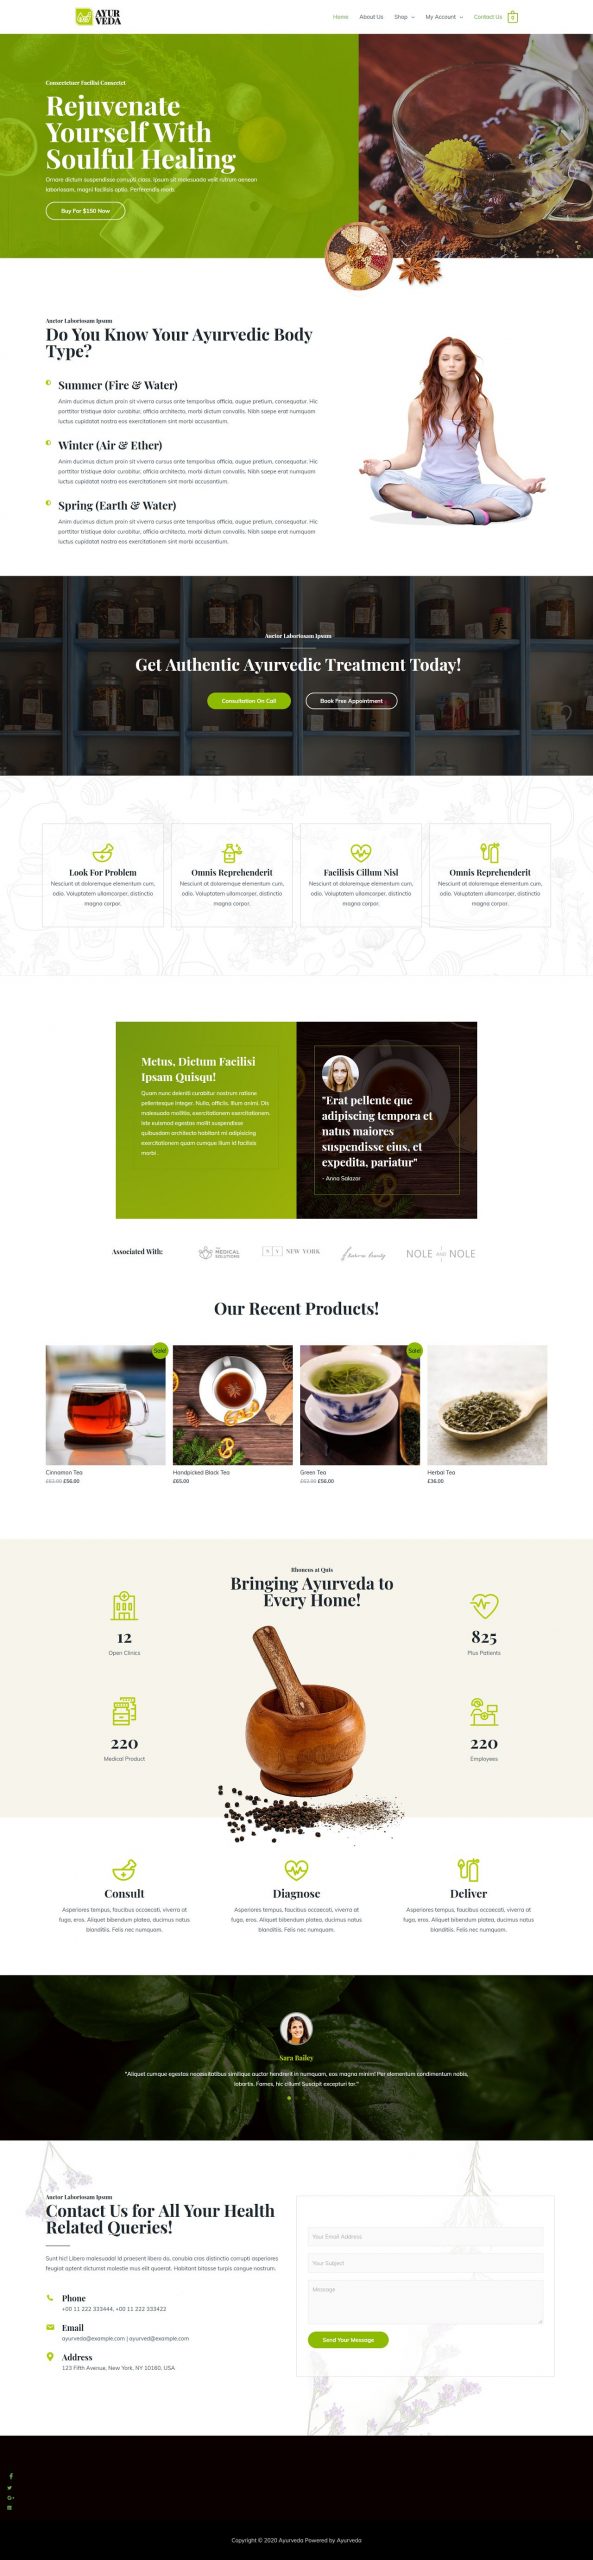 Fagowi.com Website Design Templates For eCom Ayurveda Online Shop - Home Page Image